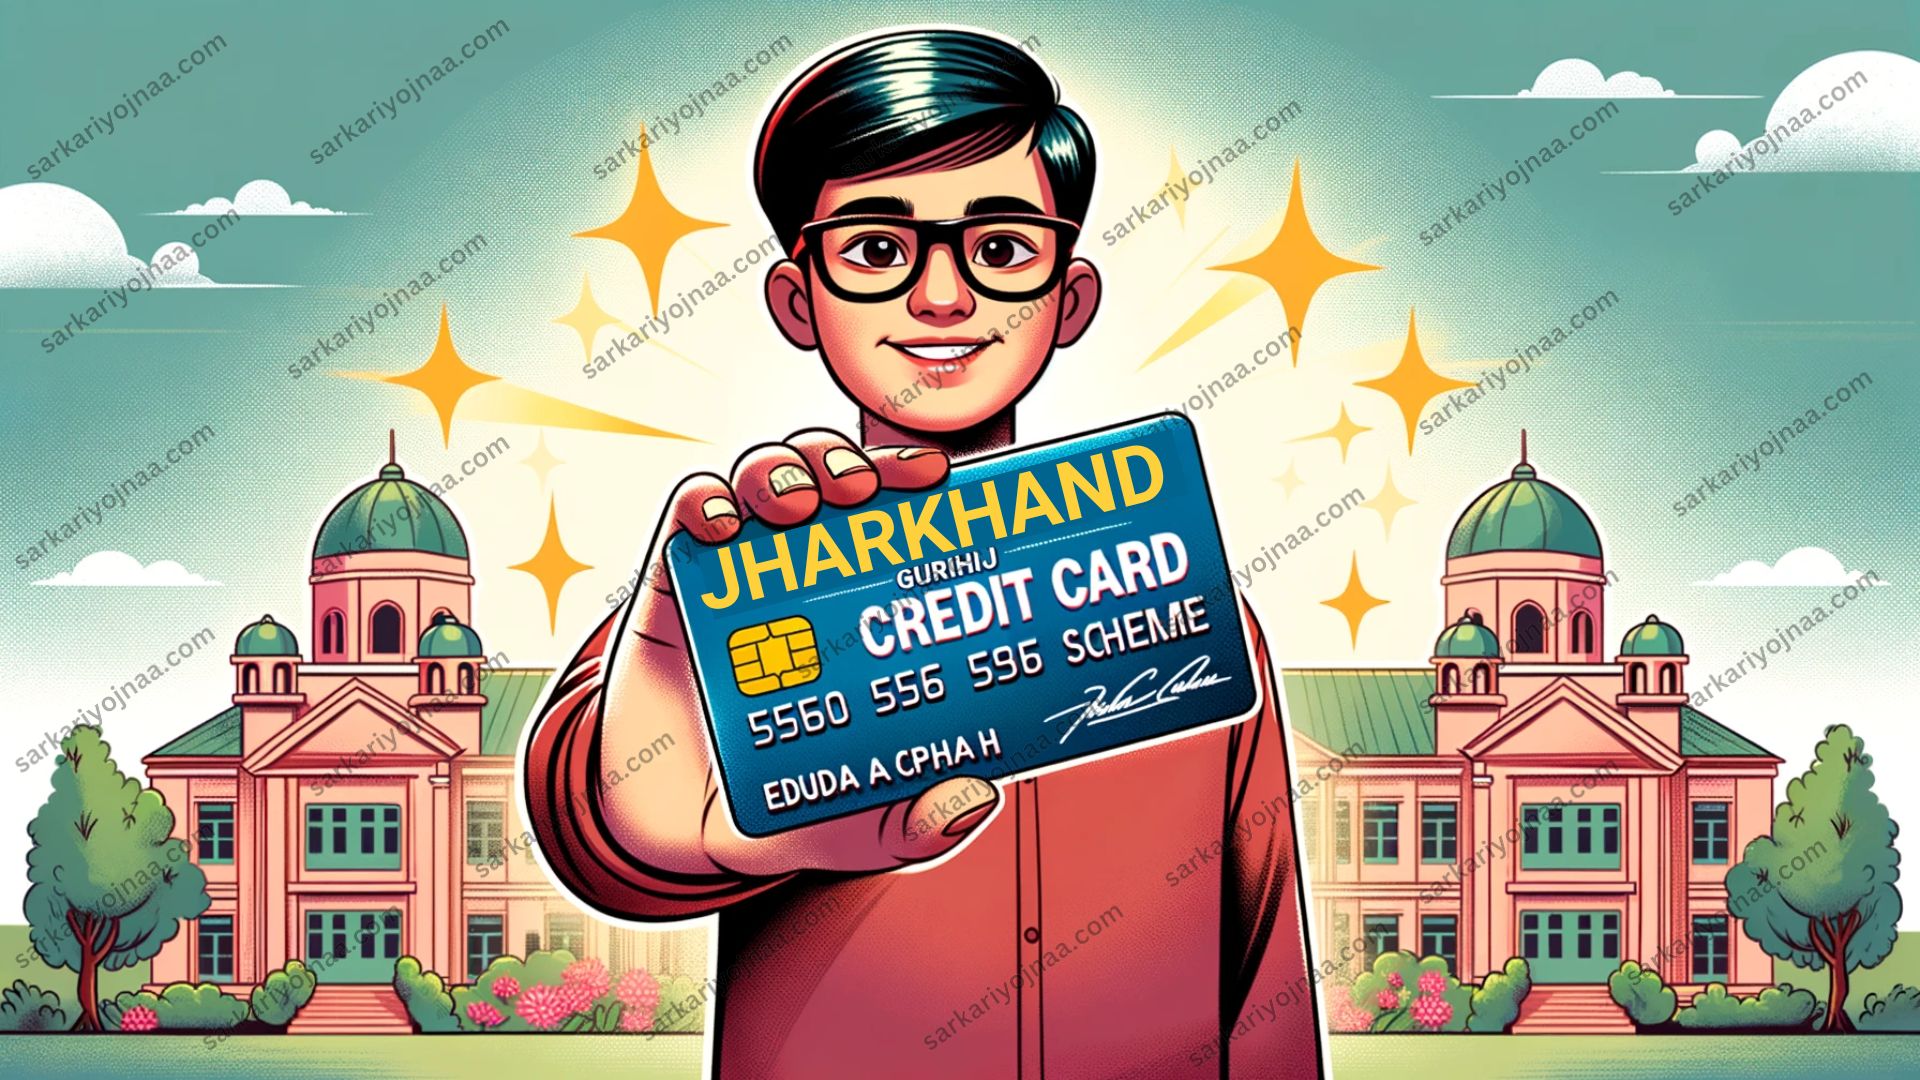 Jharkhand Guruji Credit Card Yojana